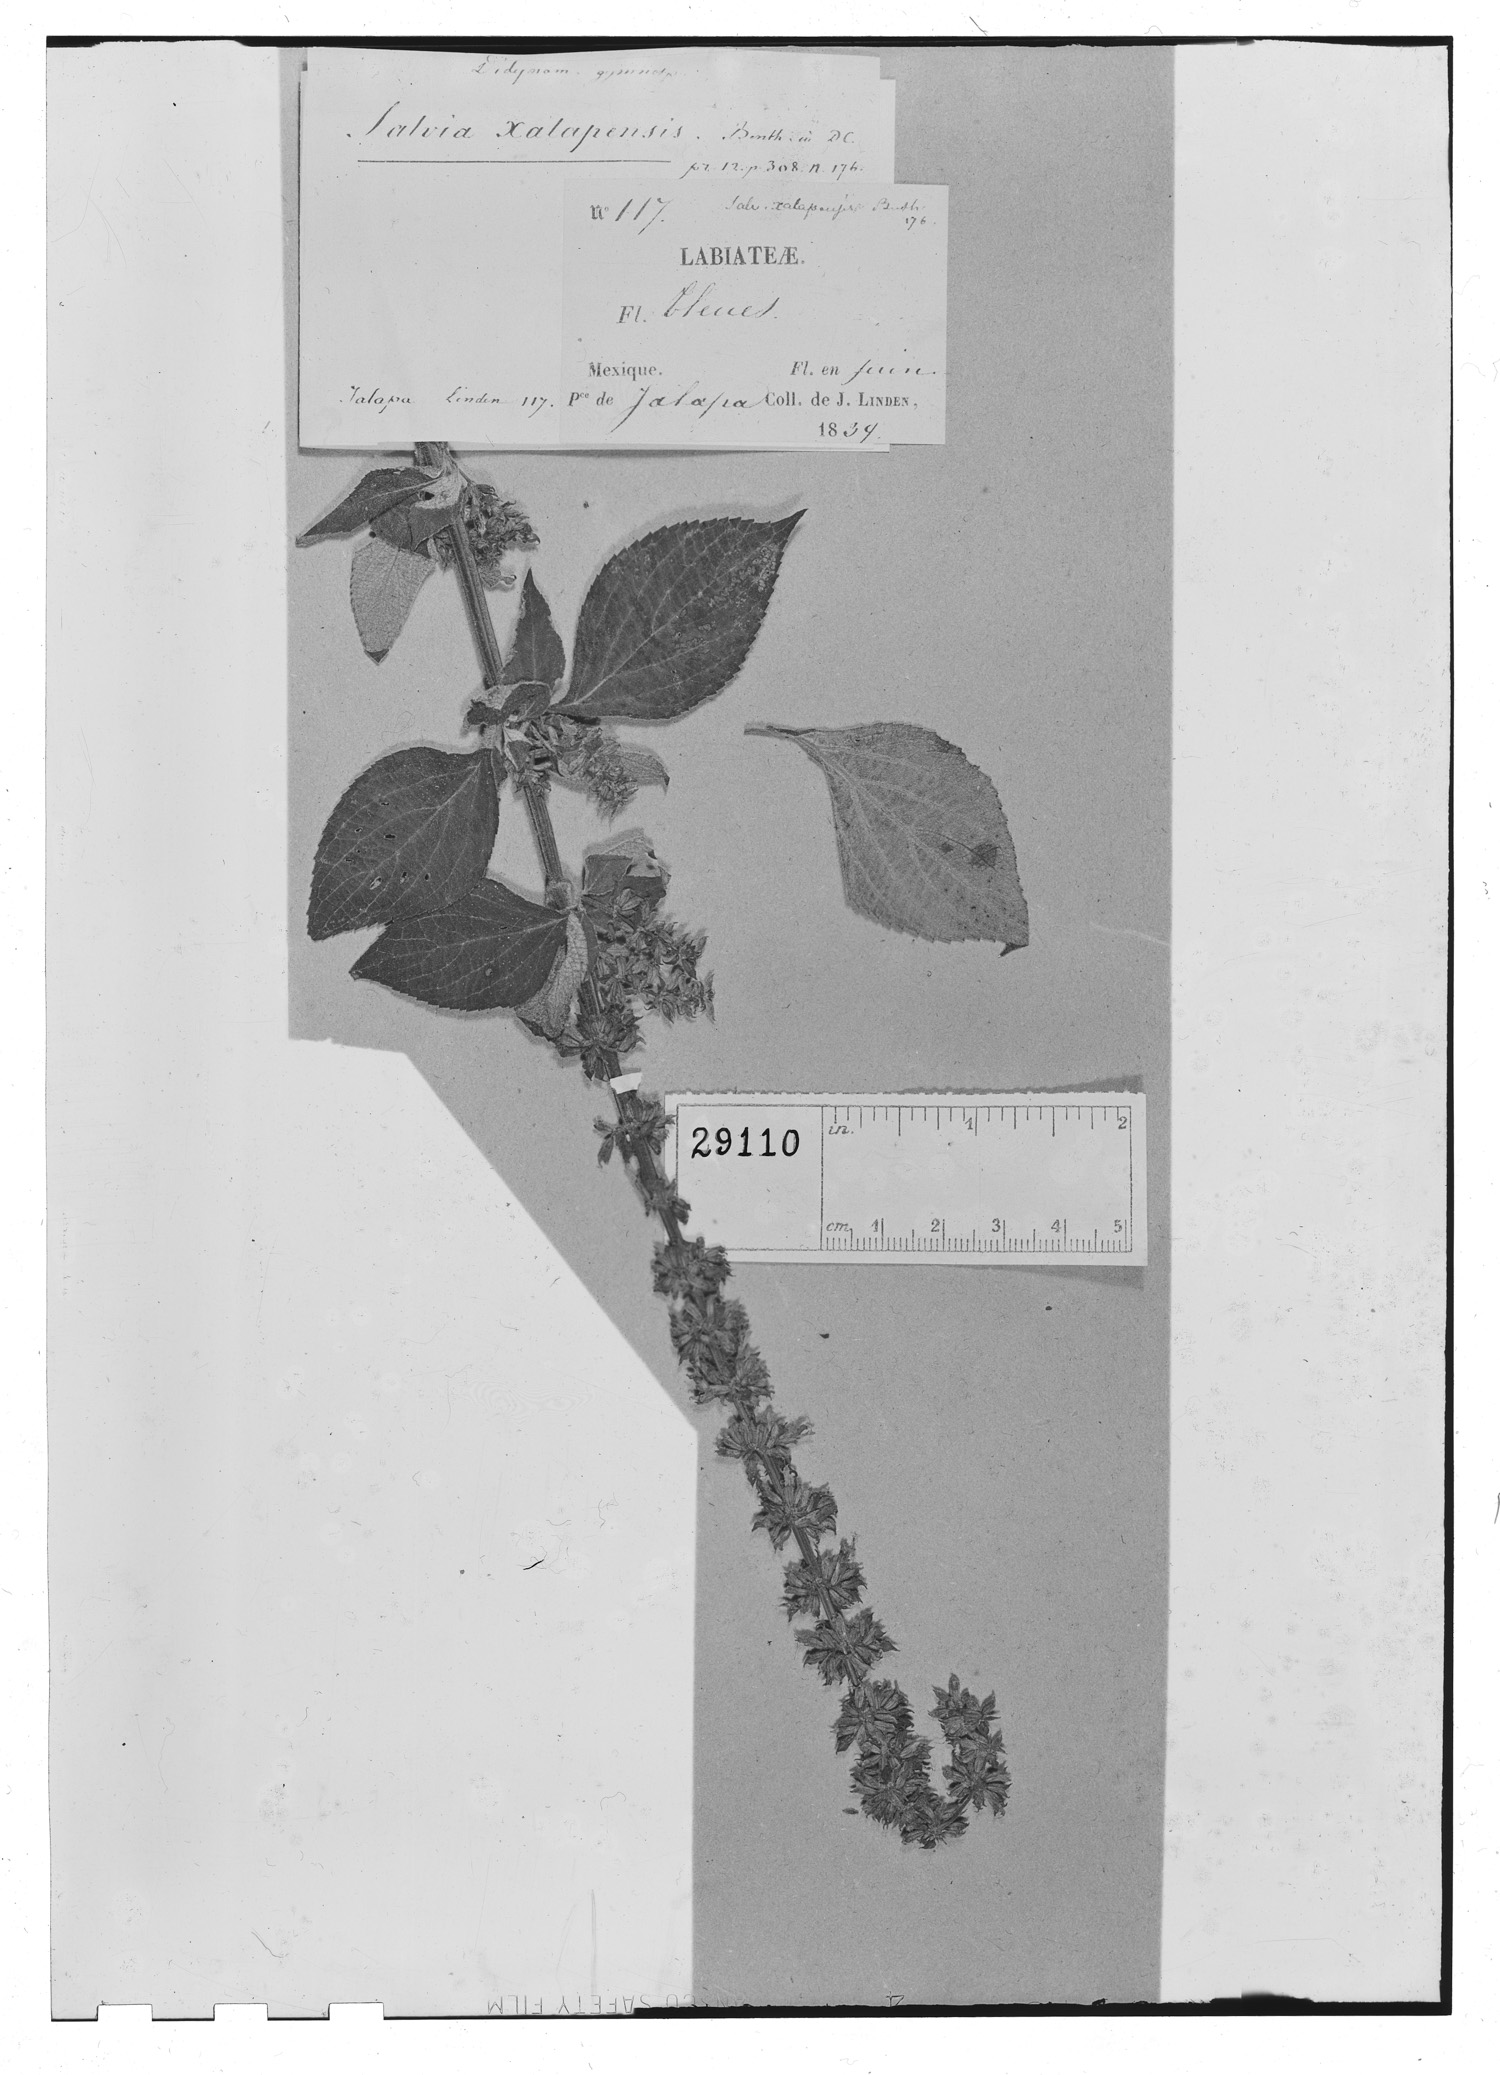 Salvia xalapensis image